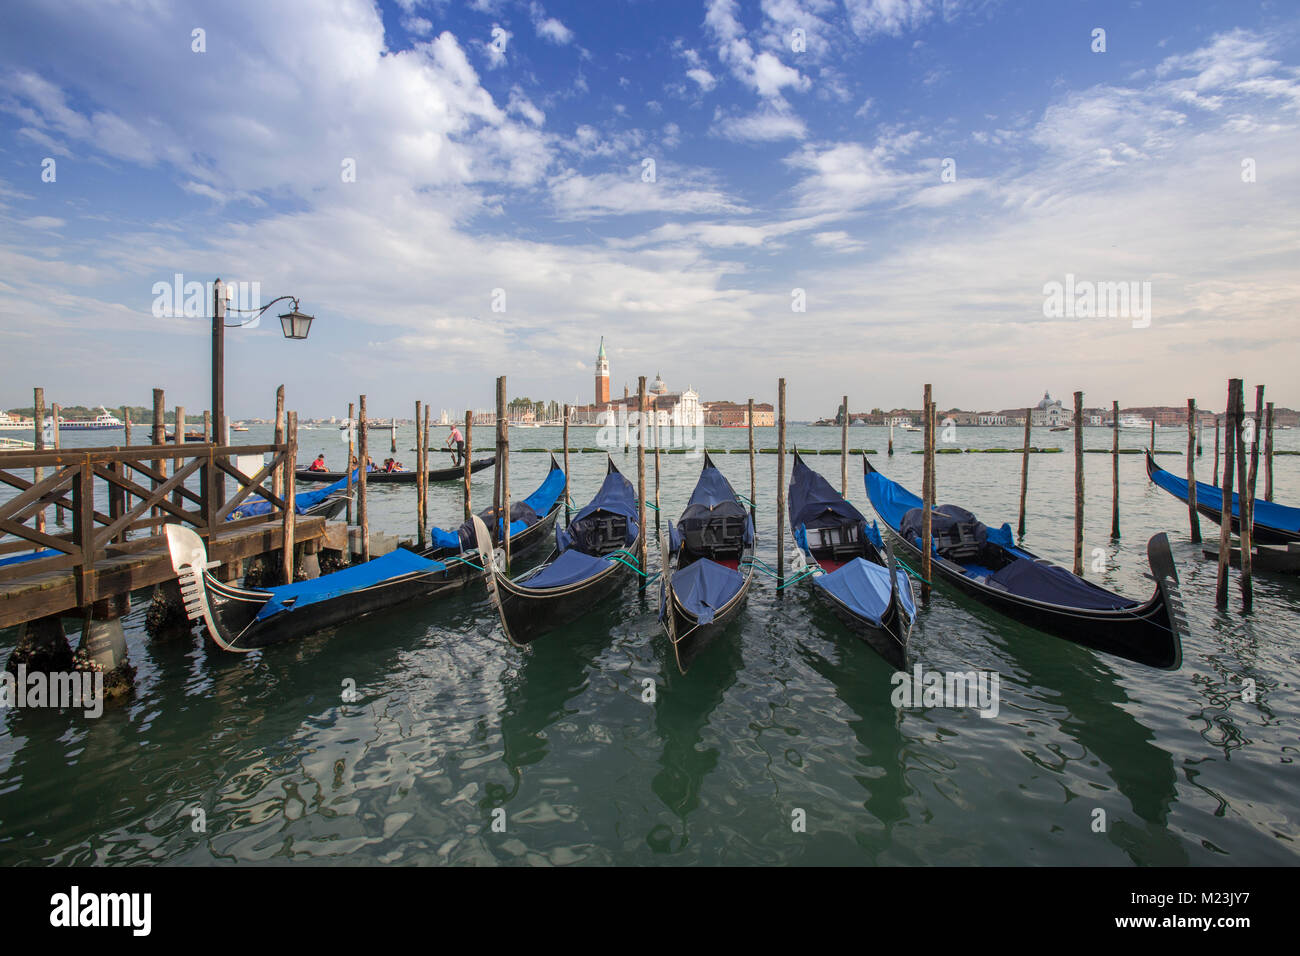 Gondolas at Saint Mark's Square with view of San Giorgio Maggiore island, Venice, Italy Stock Photo